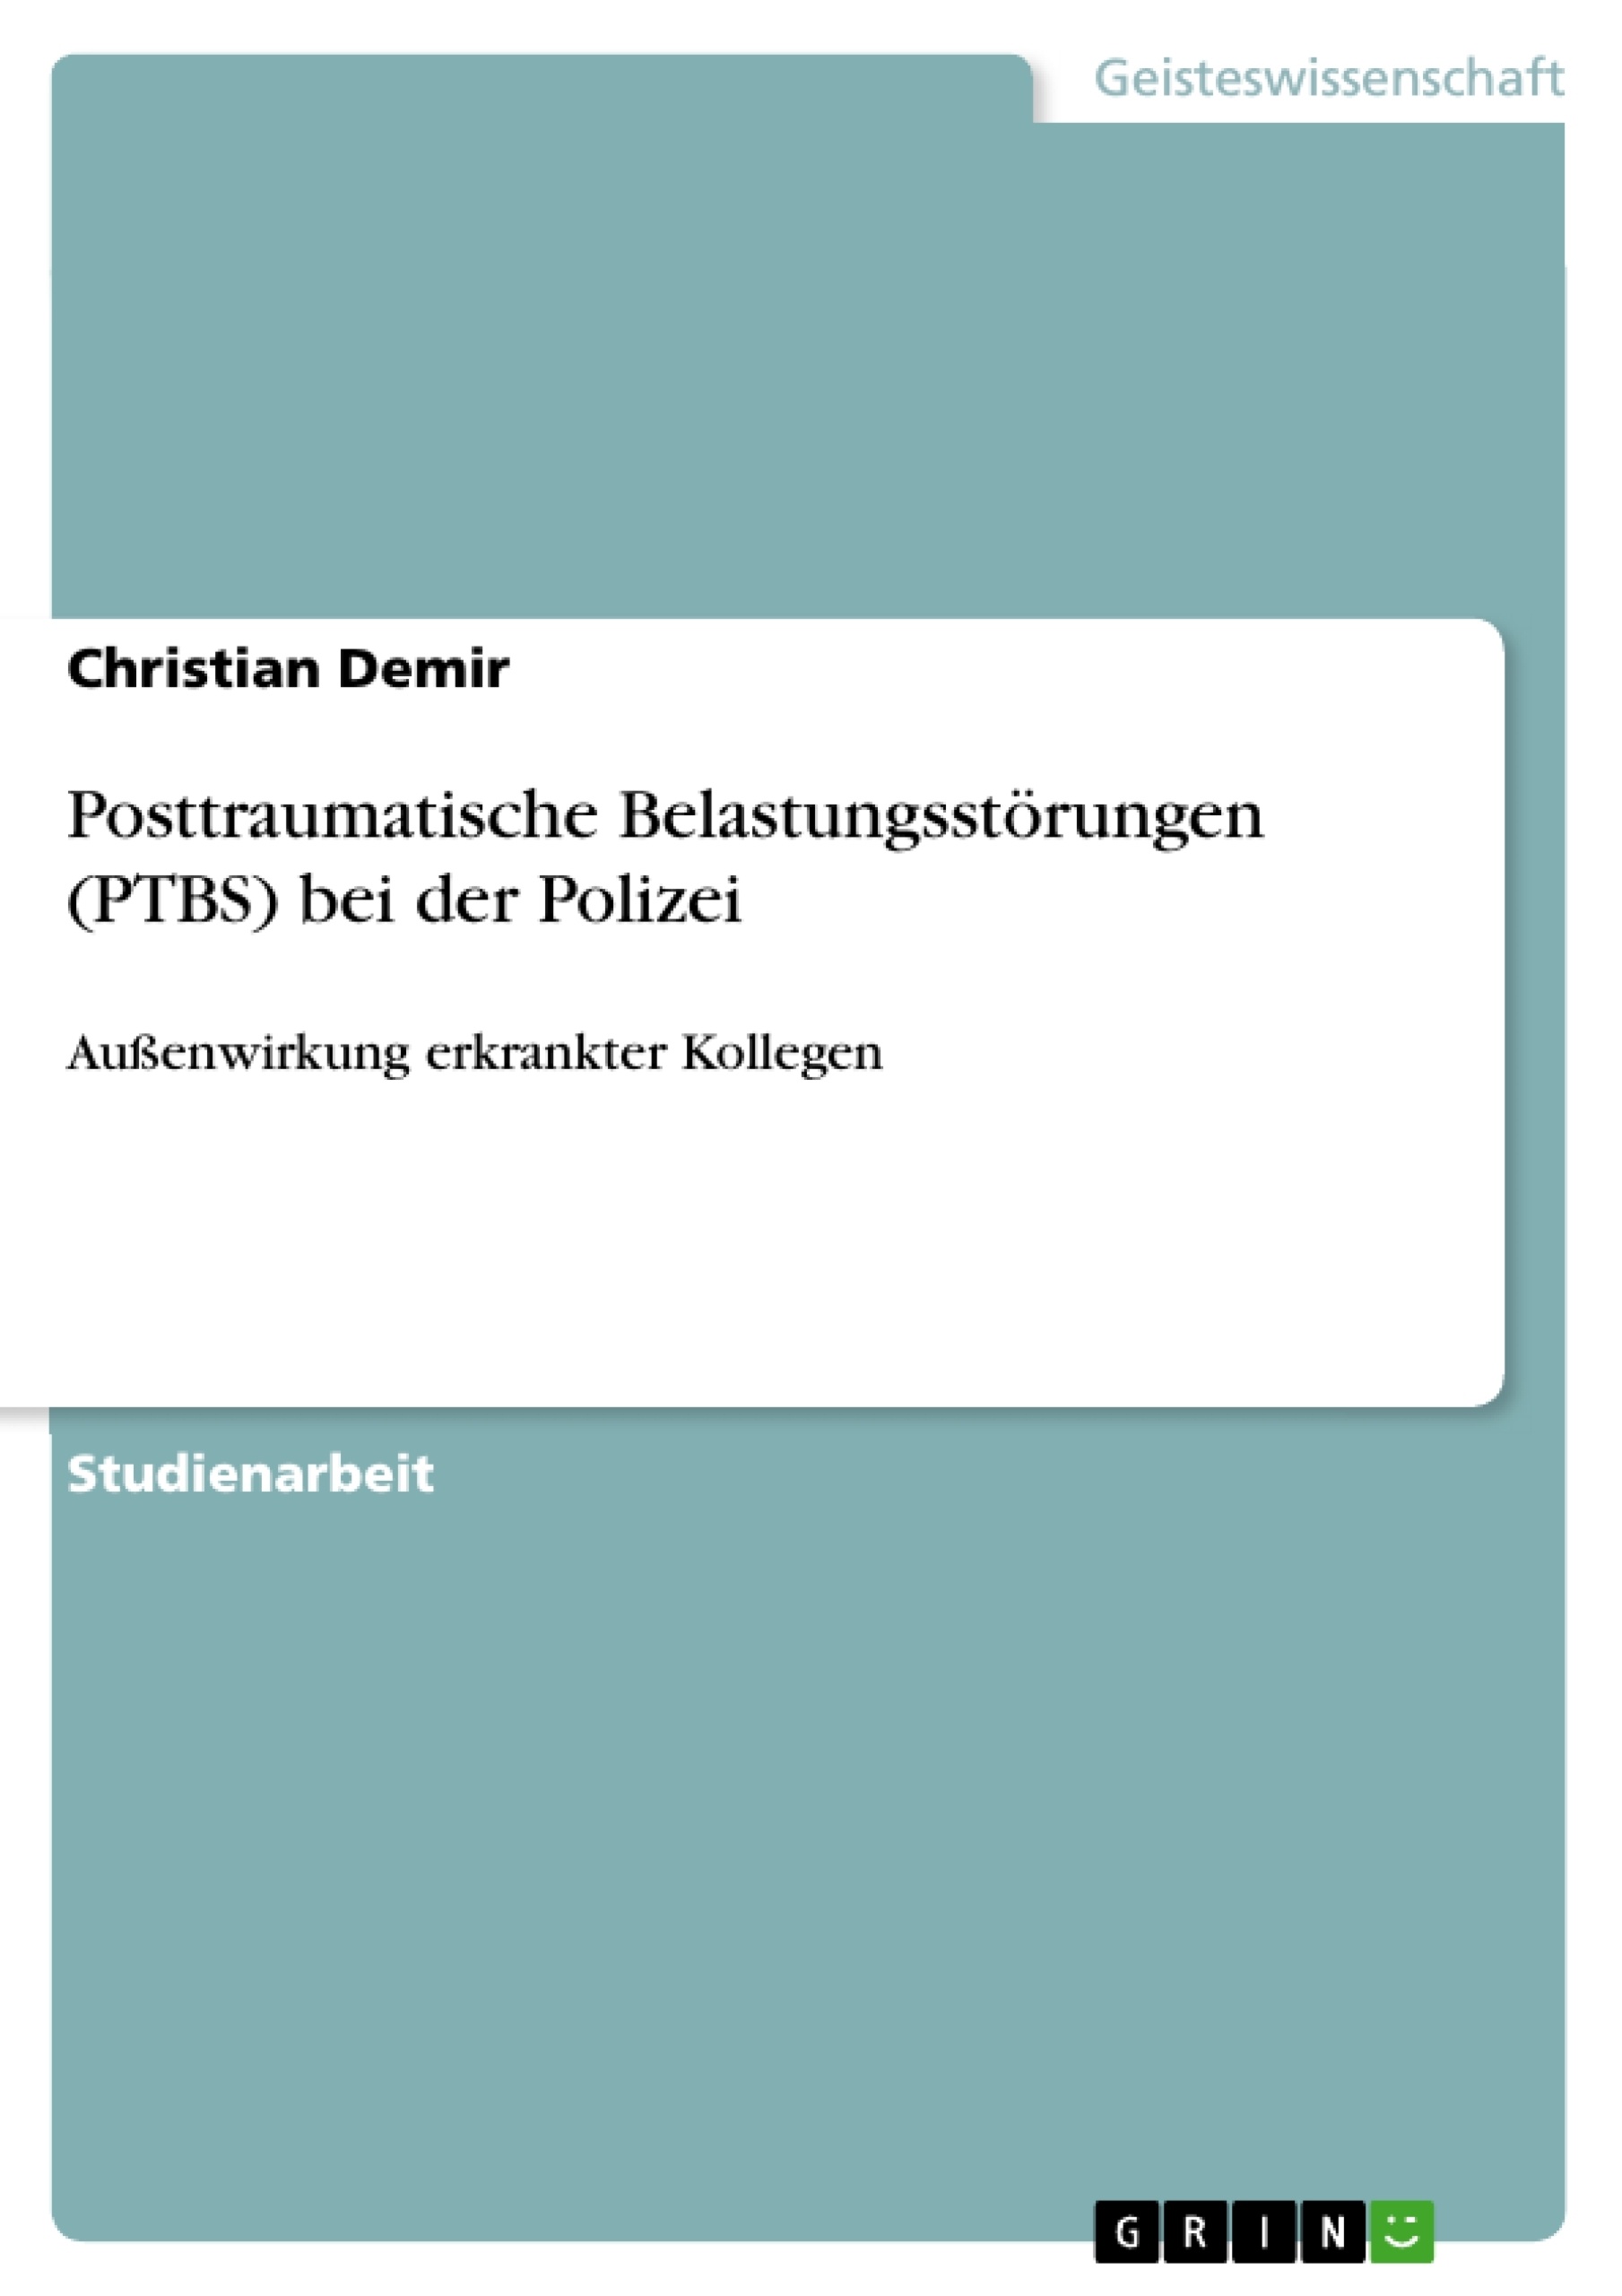 Título: Posttraumatische Belastungsstörungen (PTBS) bei der Polizei